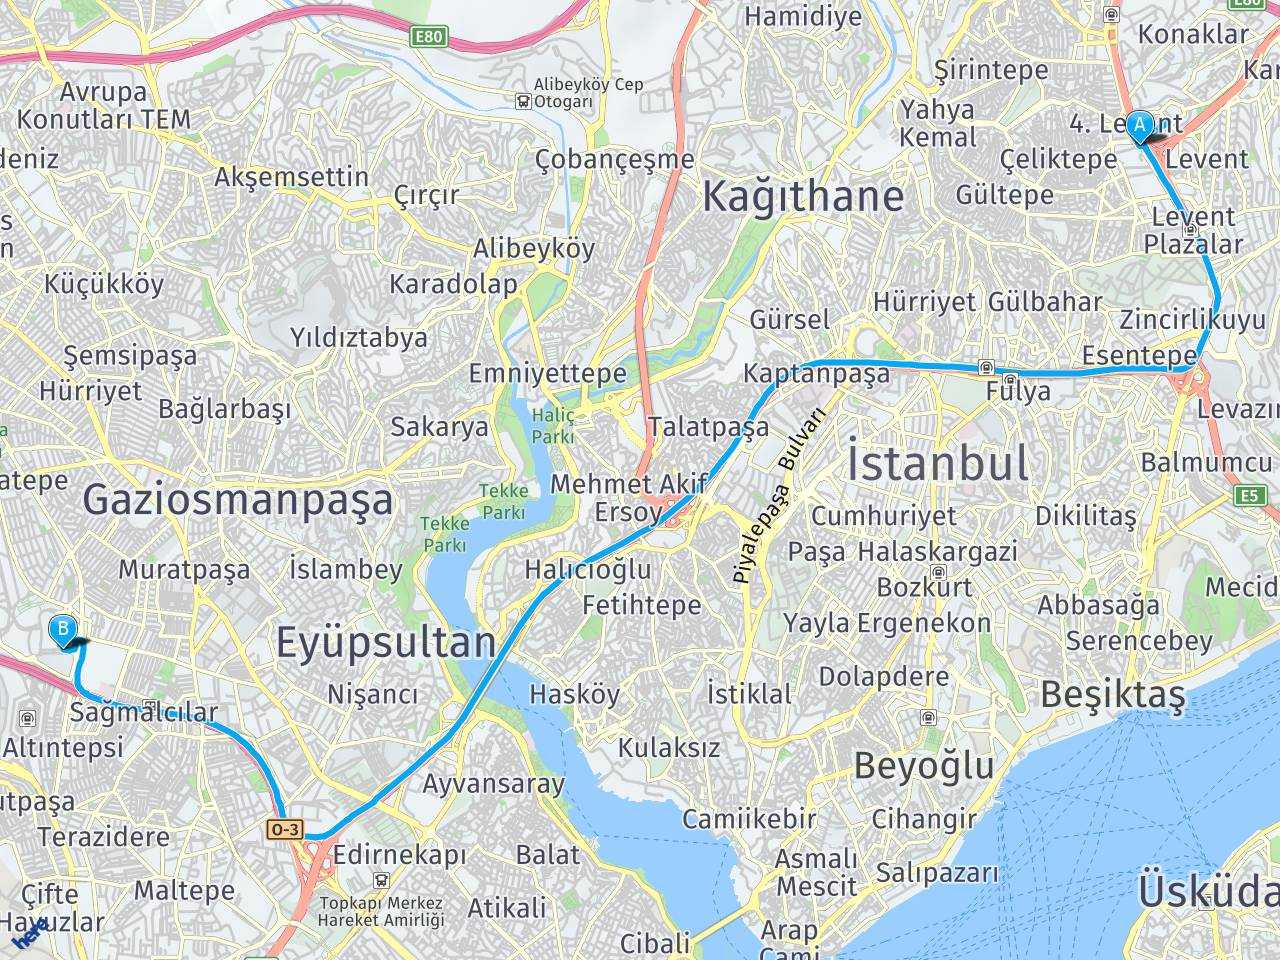 4 Levent Sanayi Mahallesi bayrampaşa forum istanbul haritası